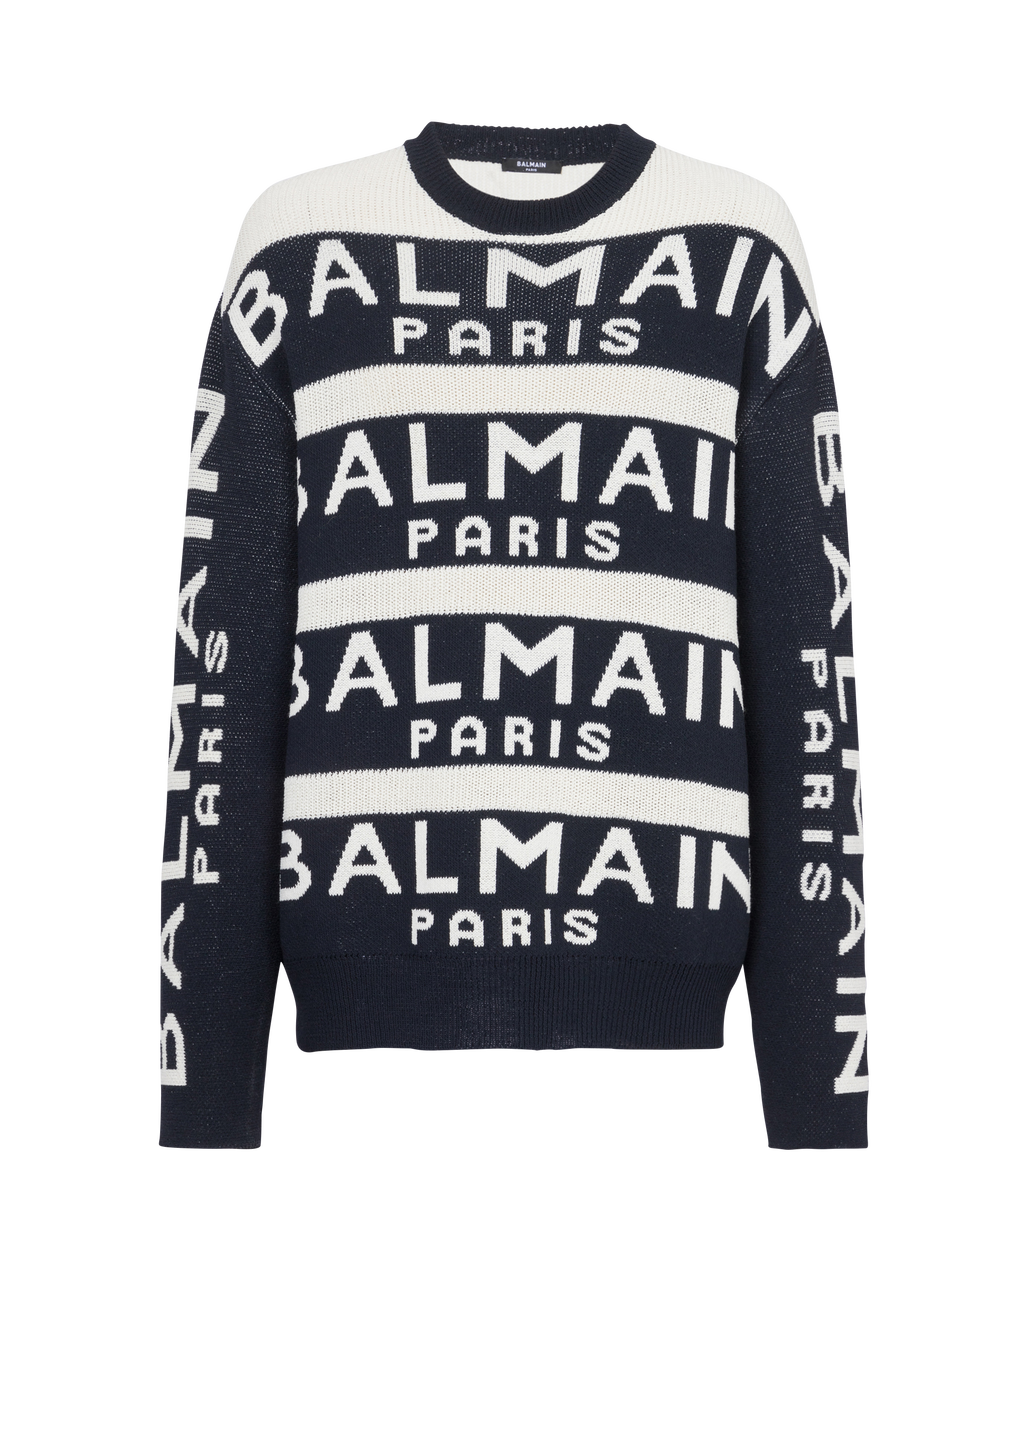 Pullover ricamato con logo Balmain Paris, nero, hi-res